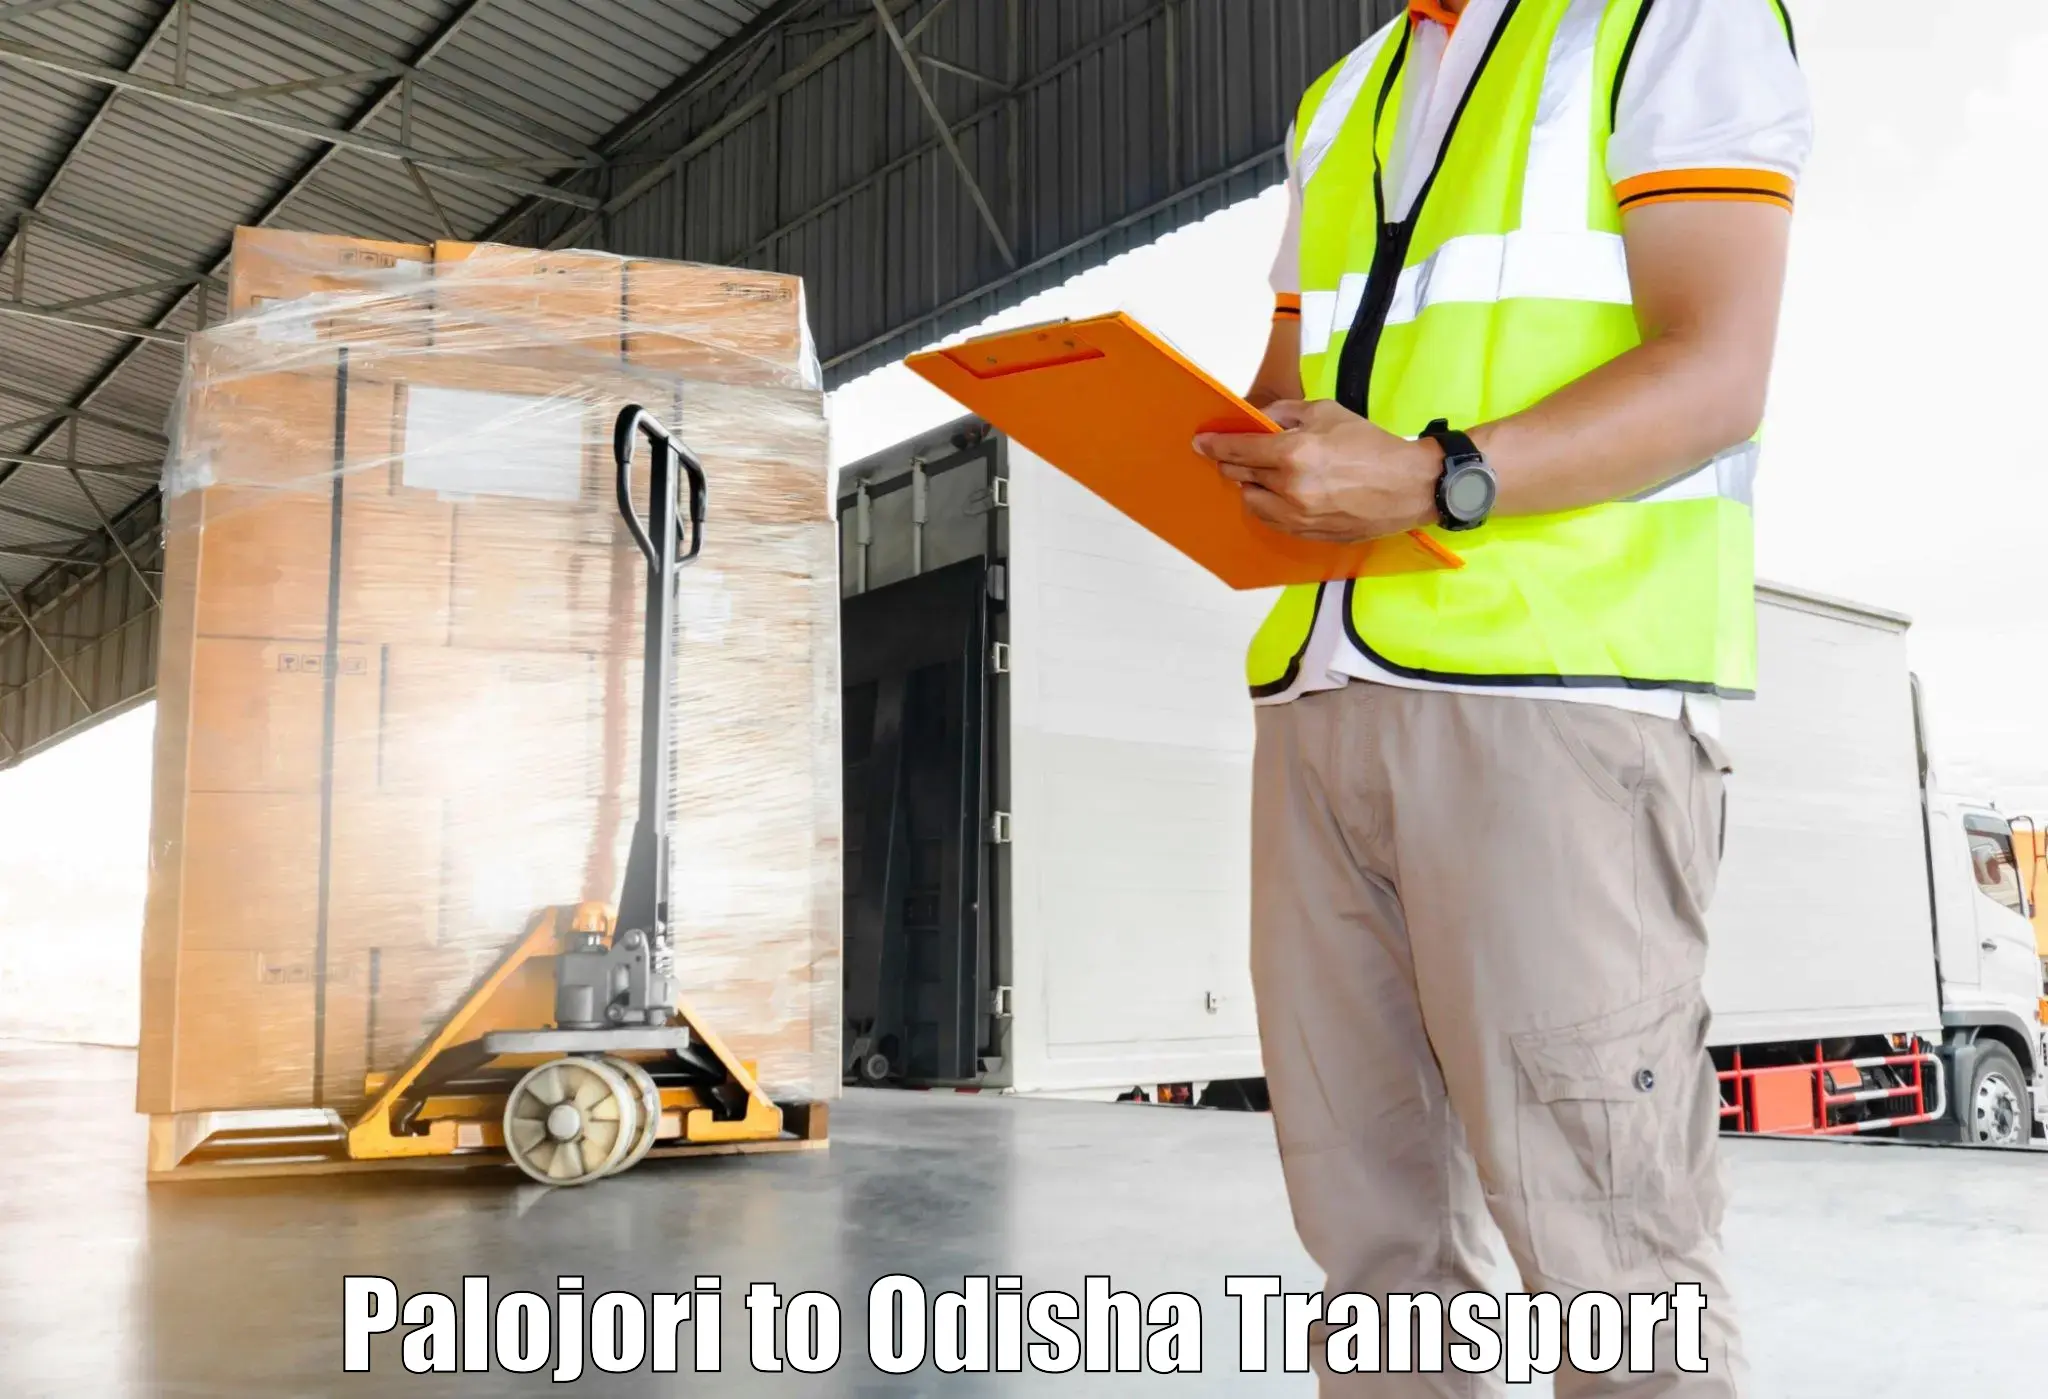 Daily transport service Palojori to Kesinga